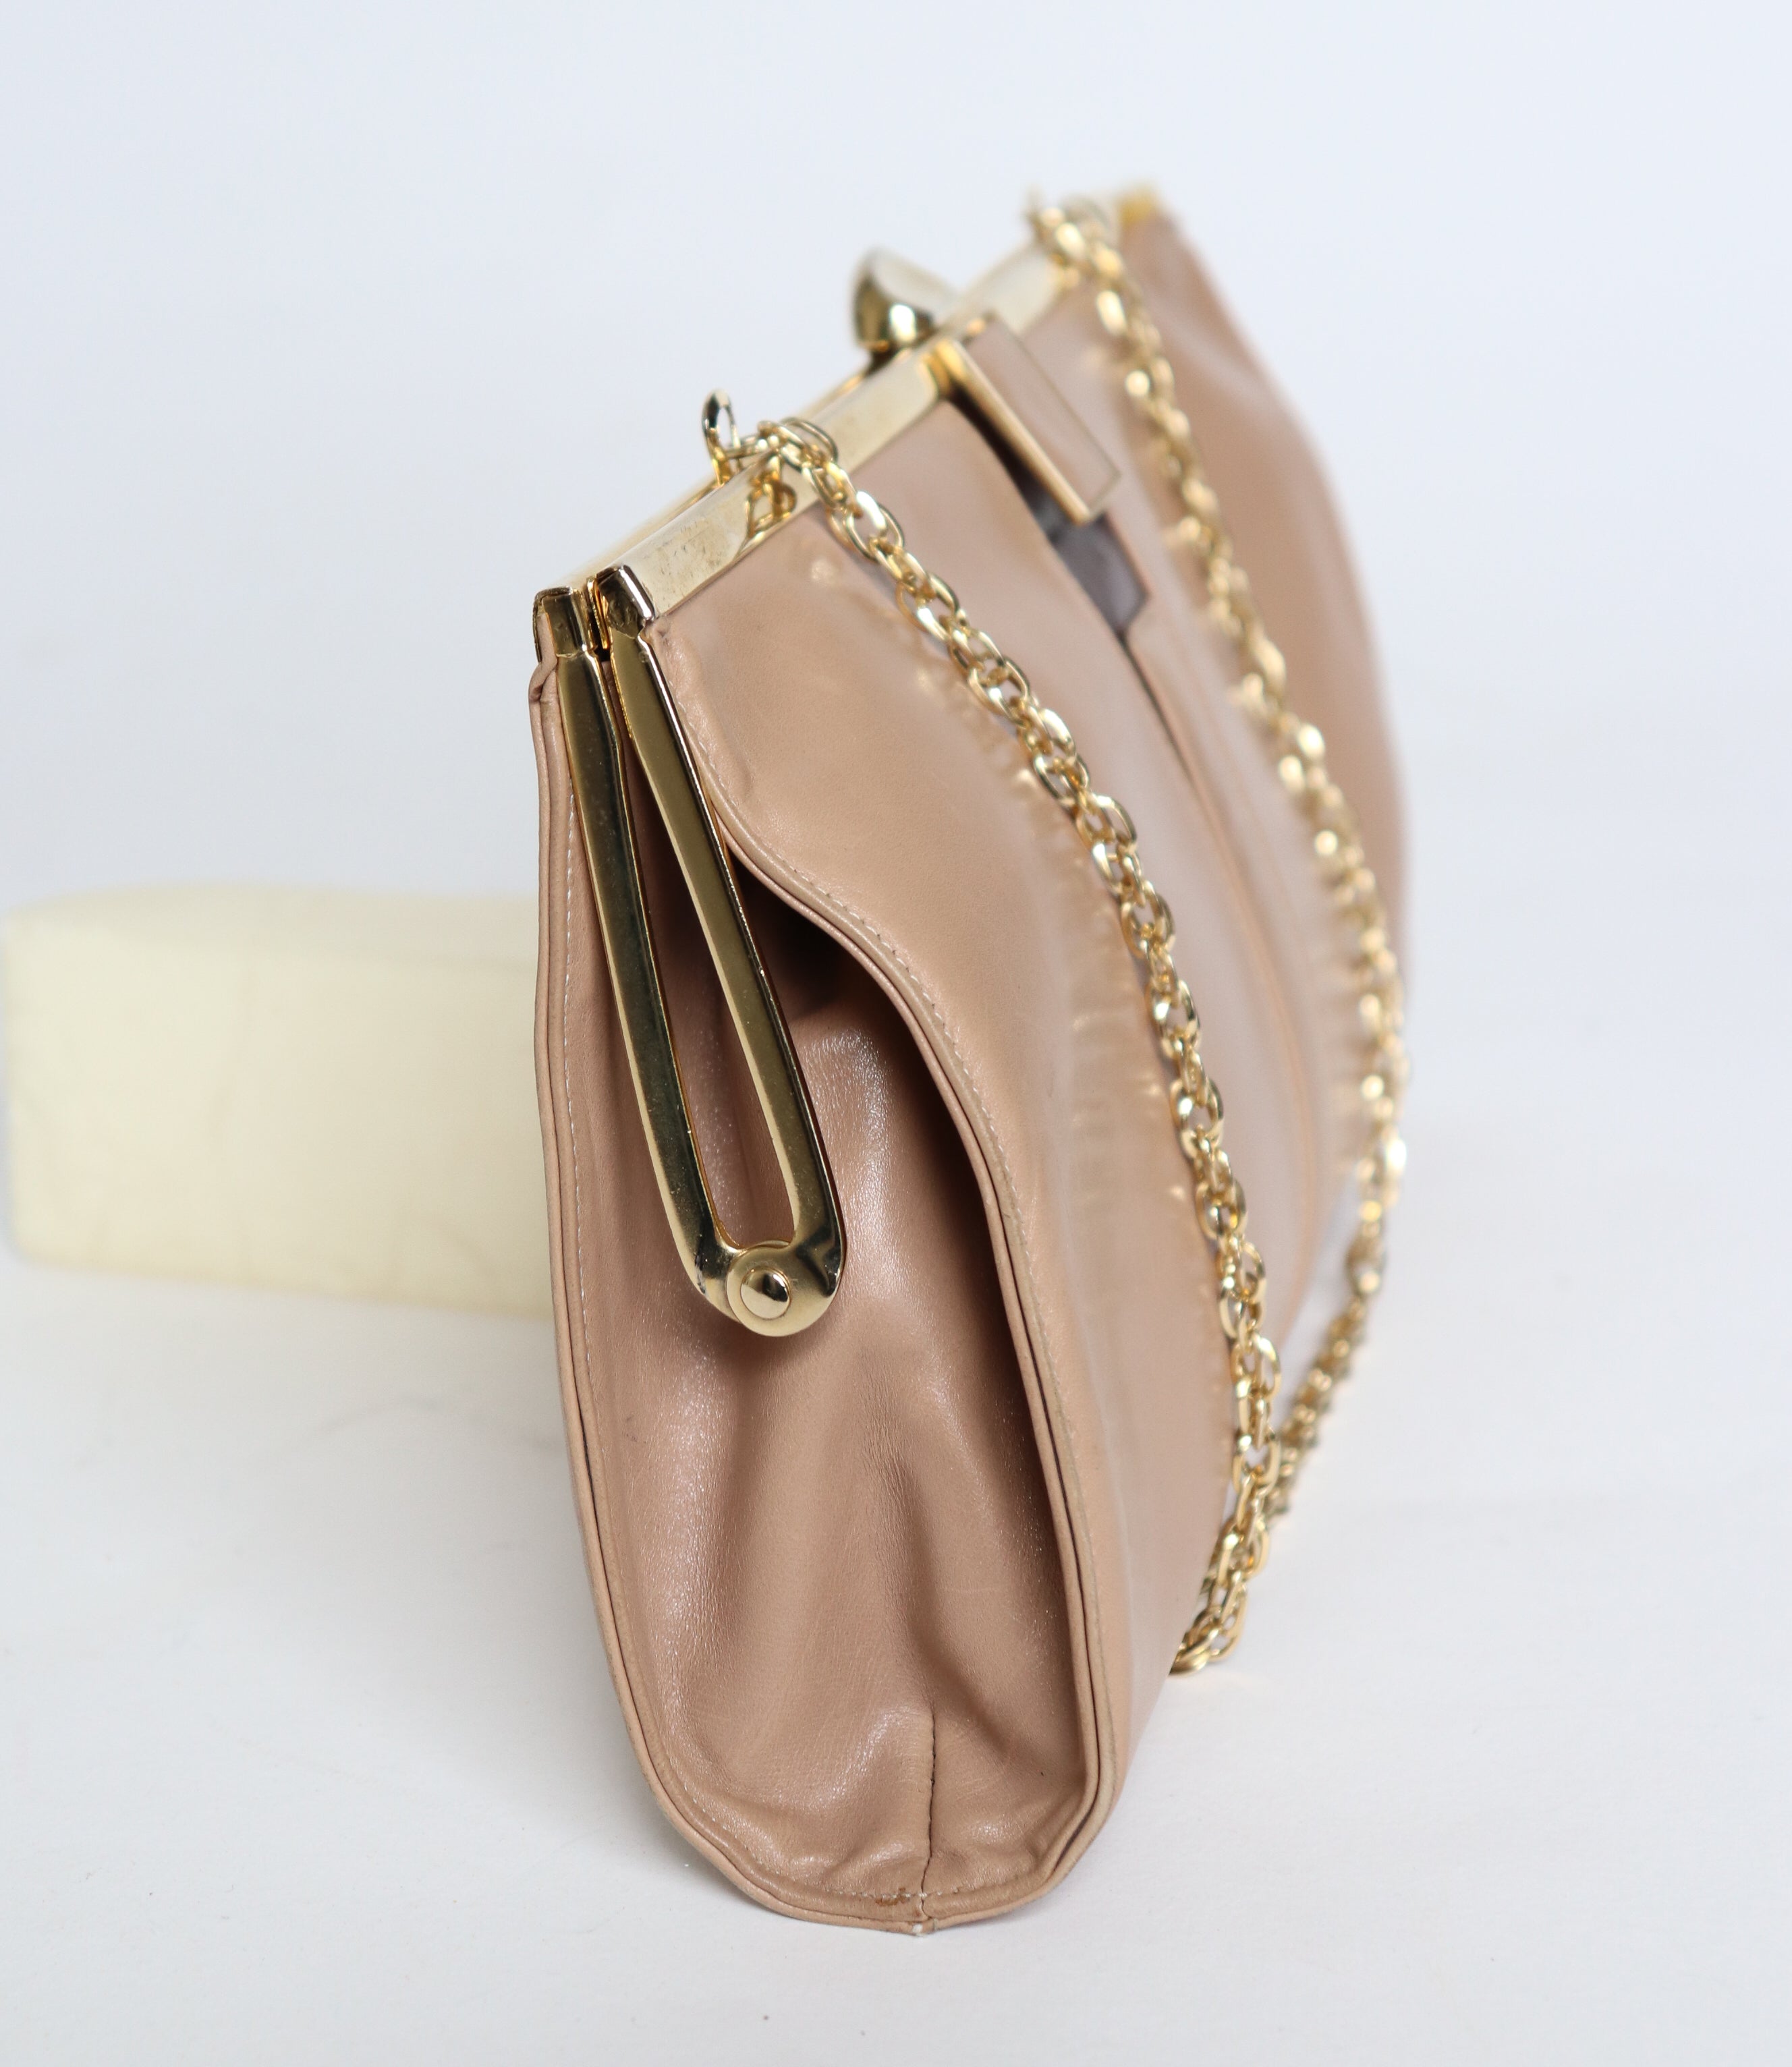 Renata Vintage Shoulder / Clutch Bag - Beige Leather - 1980s - Small